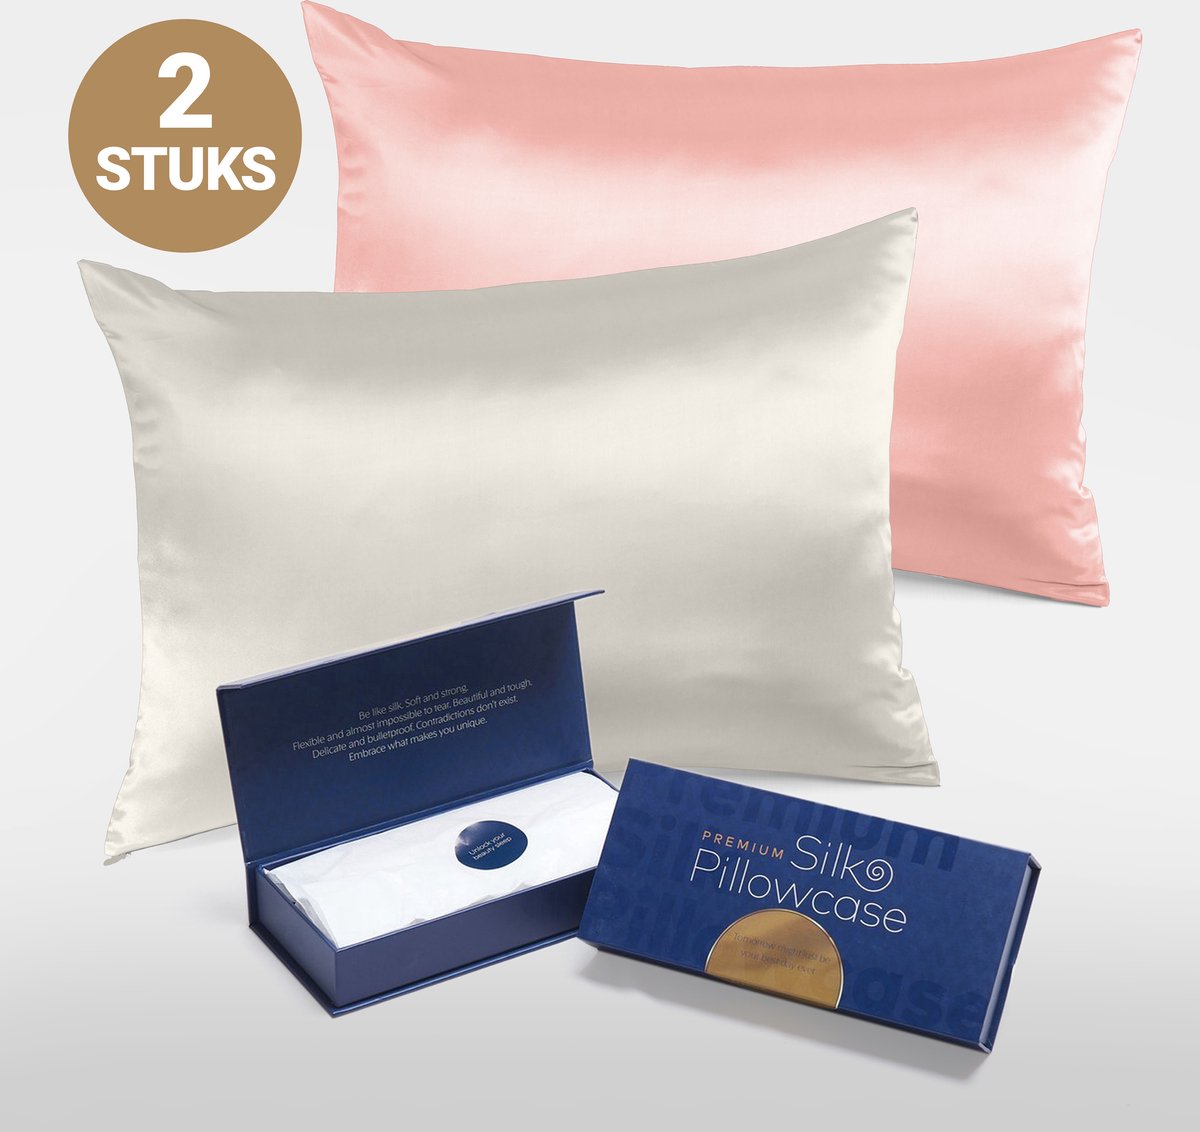 Slowwave Premium Silk Pillowcase - Extra voordelig colorpack: Cherry Blossom (roze) en Off White (gebroken wit) - Ervaar het beste zijden kussensloop - 100% Mulberry zijde - 22 momme - Hoogste kwaliteit (grade 6A) - 60x70cm